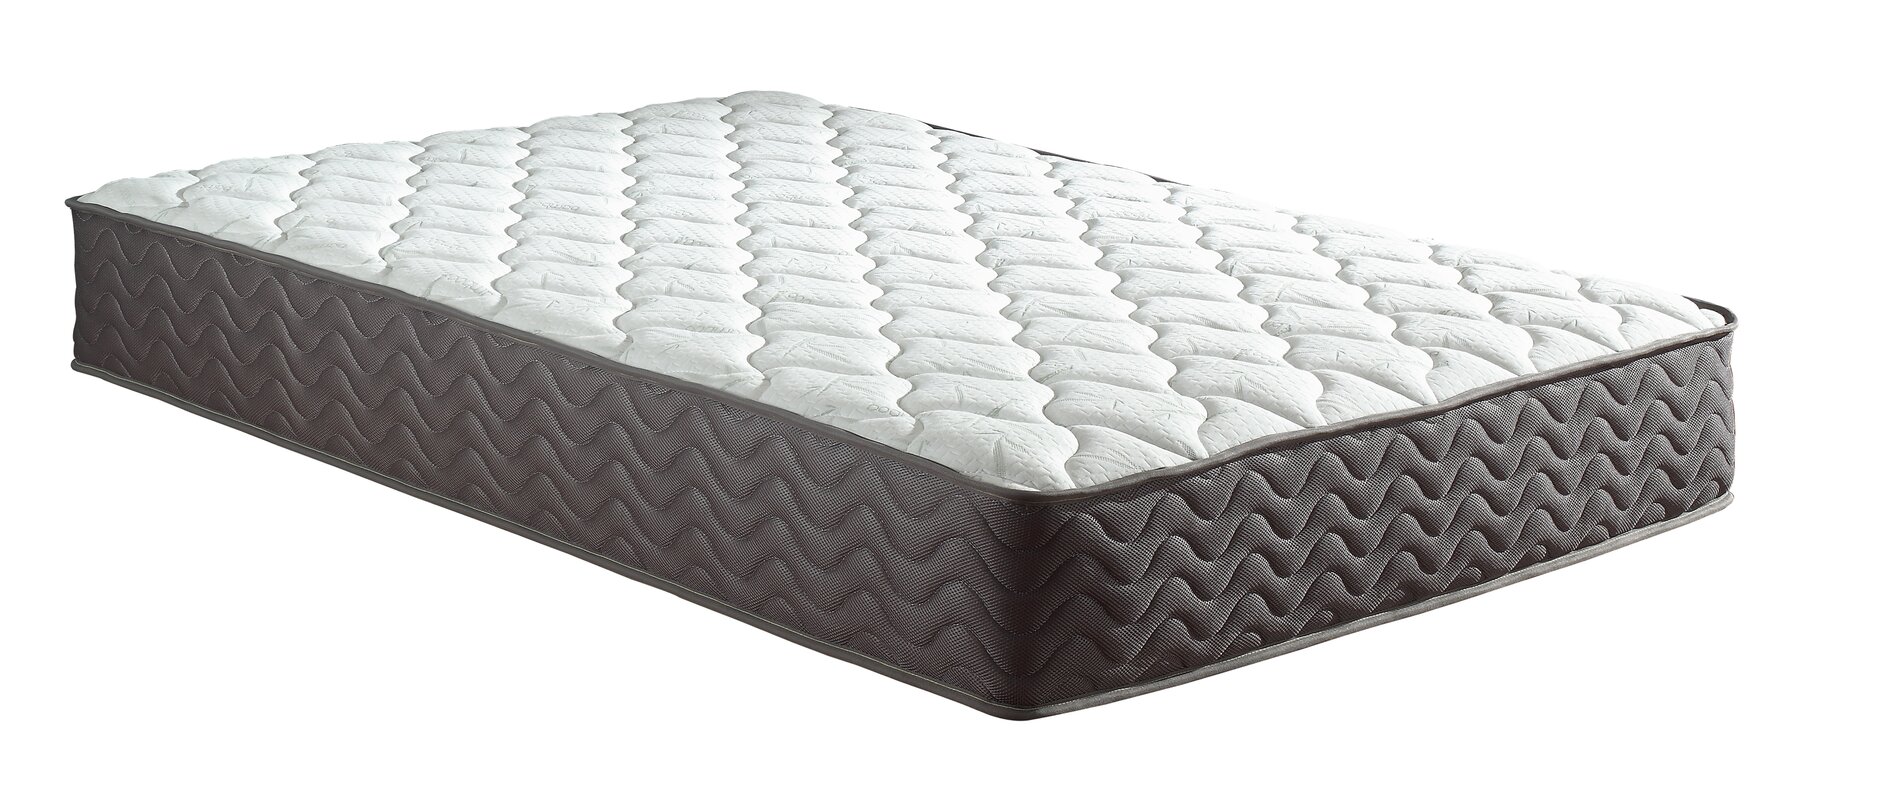 madison plaza mattress review